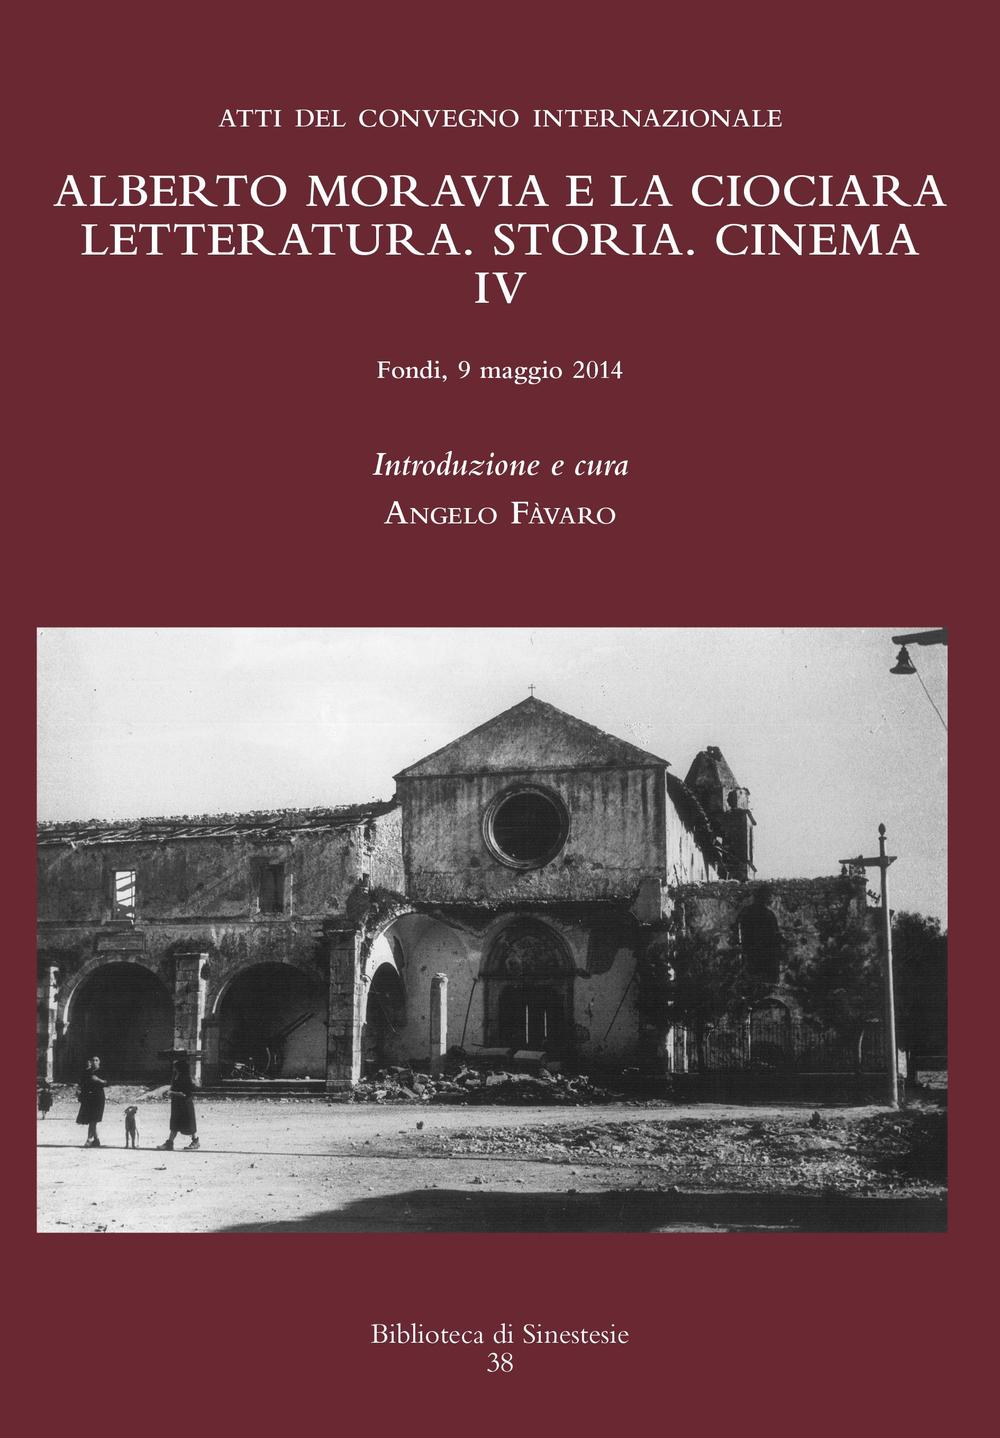 Image of Alberto Moravia e «La ciociara». Storia, letteratura, cinema. Atti del 4° Convegno internazionale